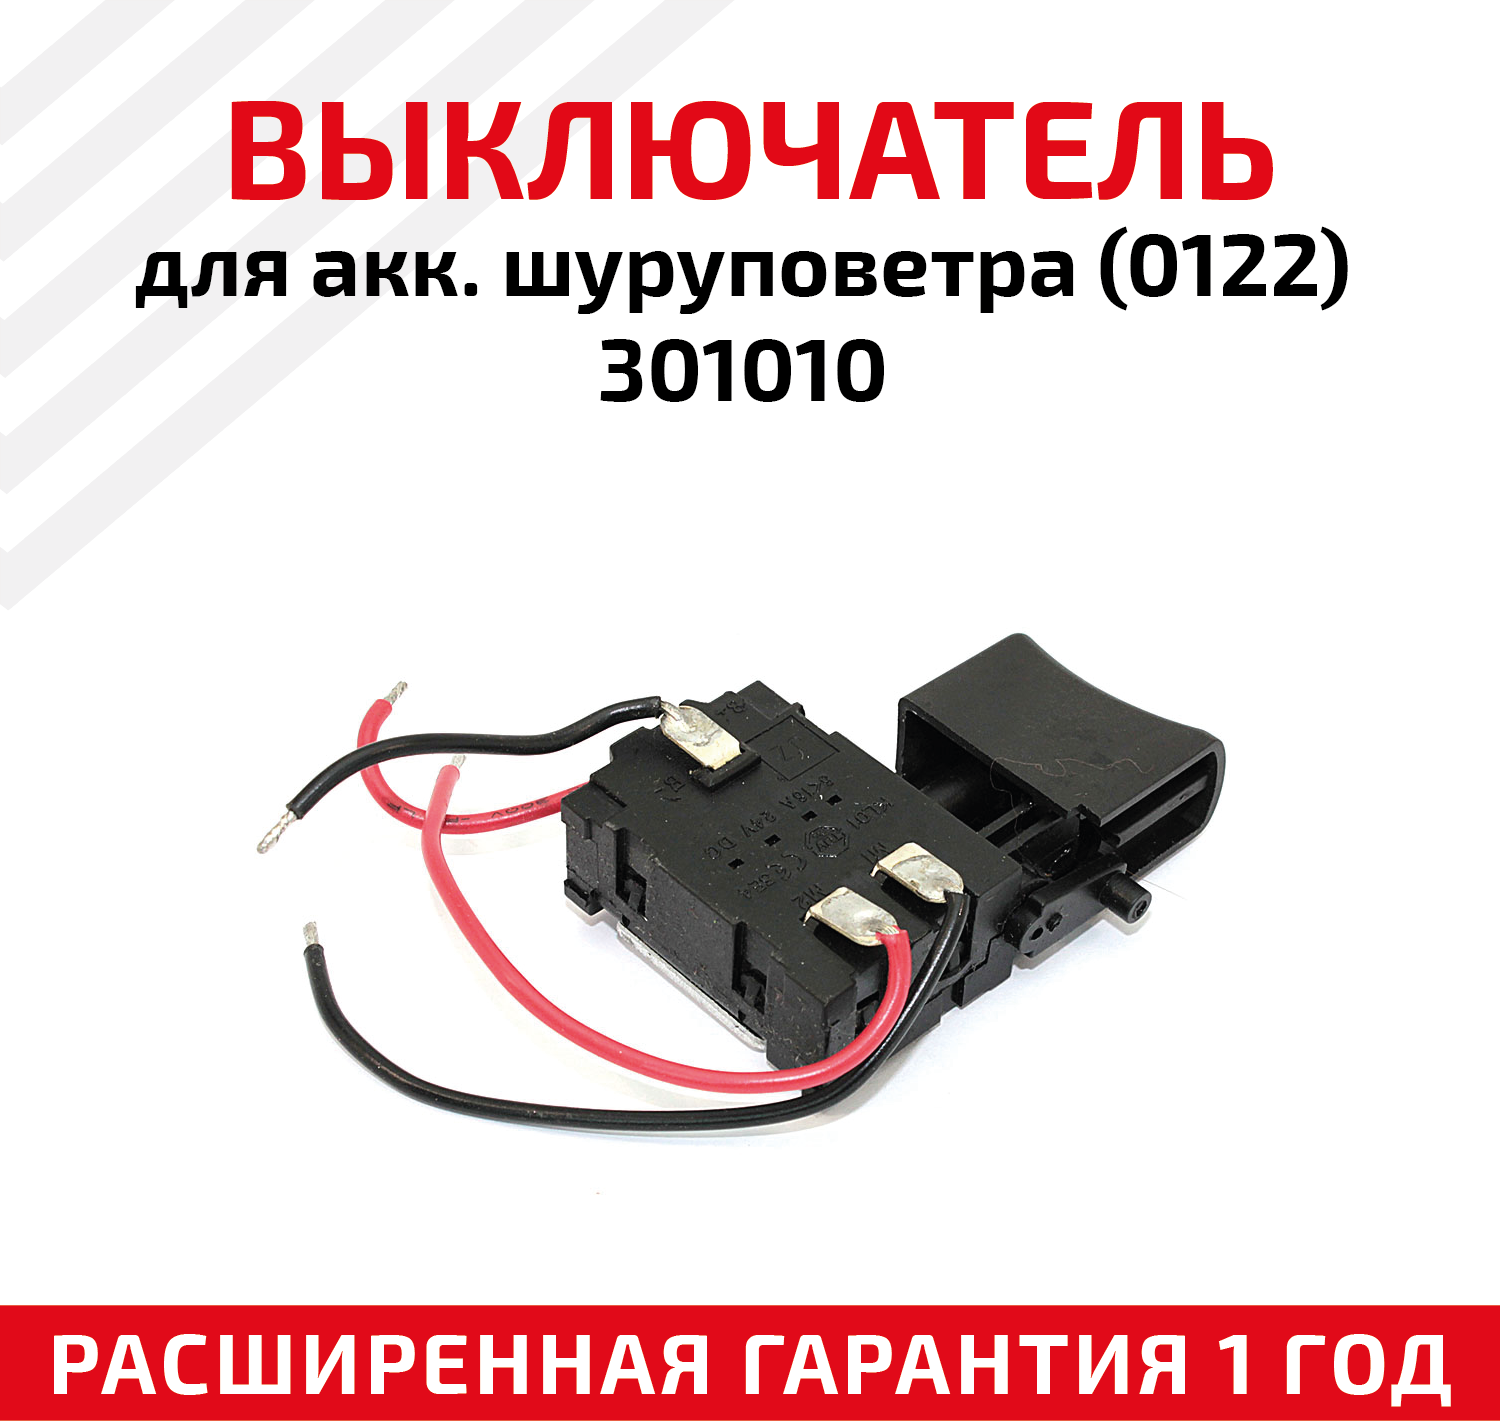 Выключатель для аккумуляторных шуруповетров (0122), 301010